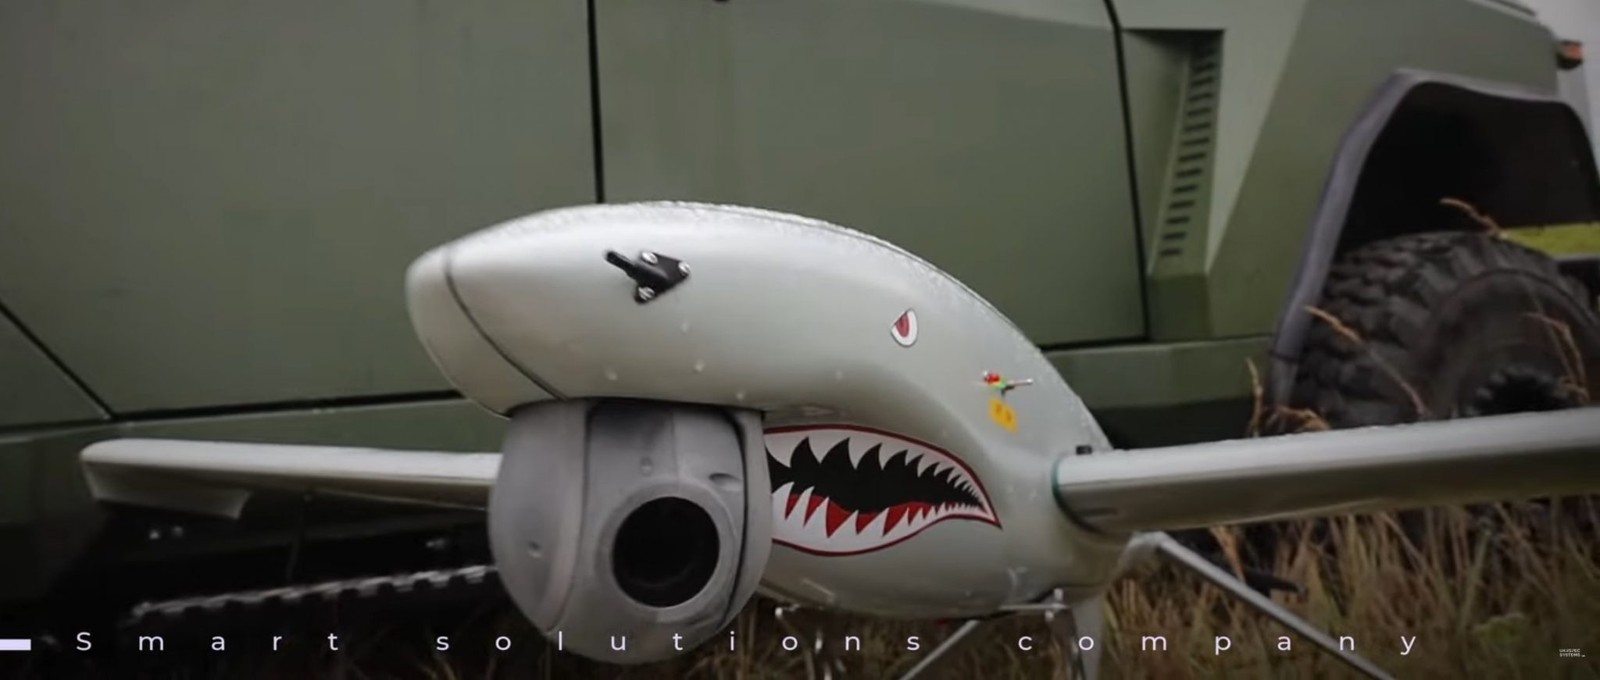 Rekin od UkrSpecSystem, Nowy ukraiński dron